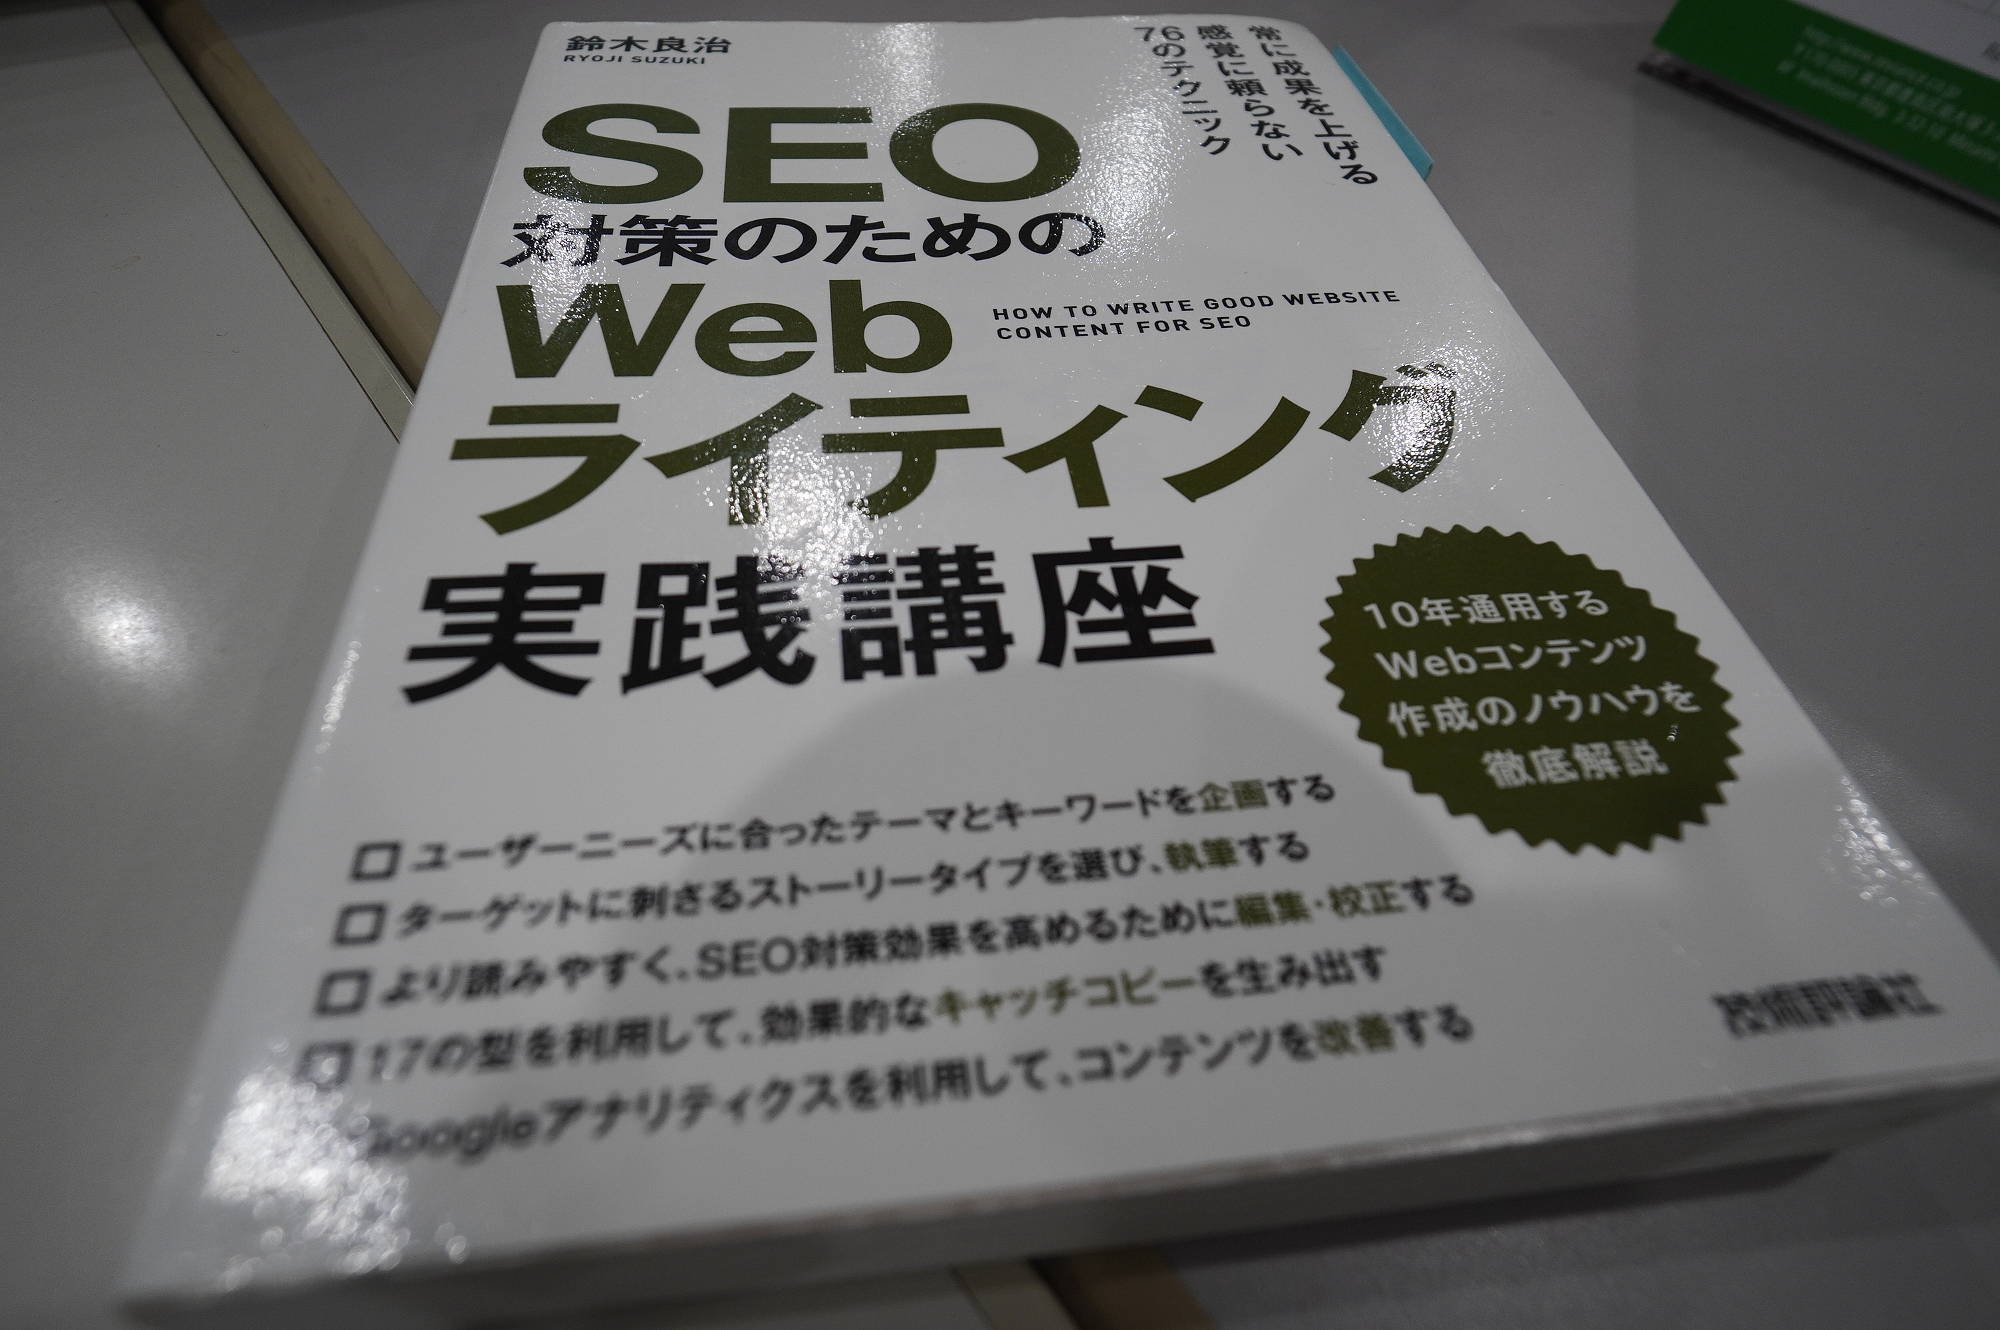 【SEO学習本】SEO対策のためのWebライティング実践講座